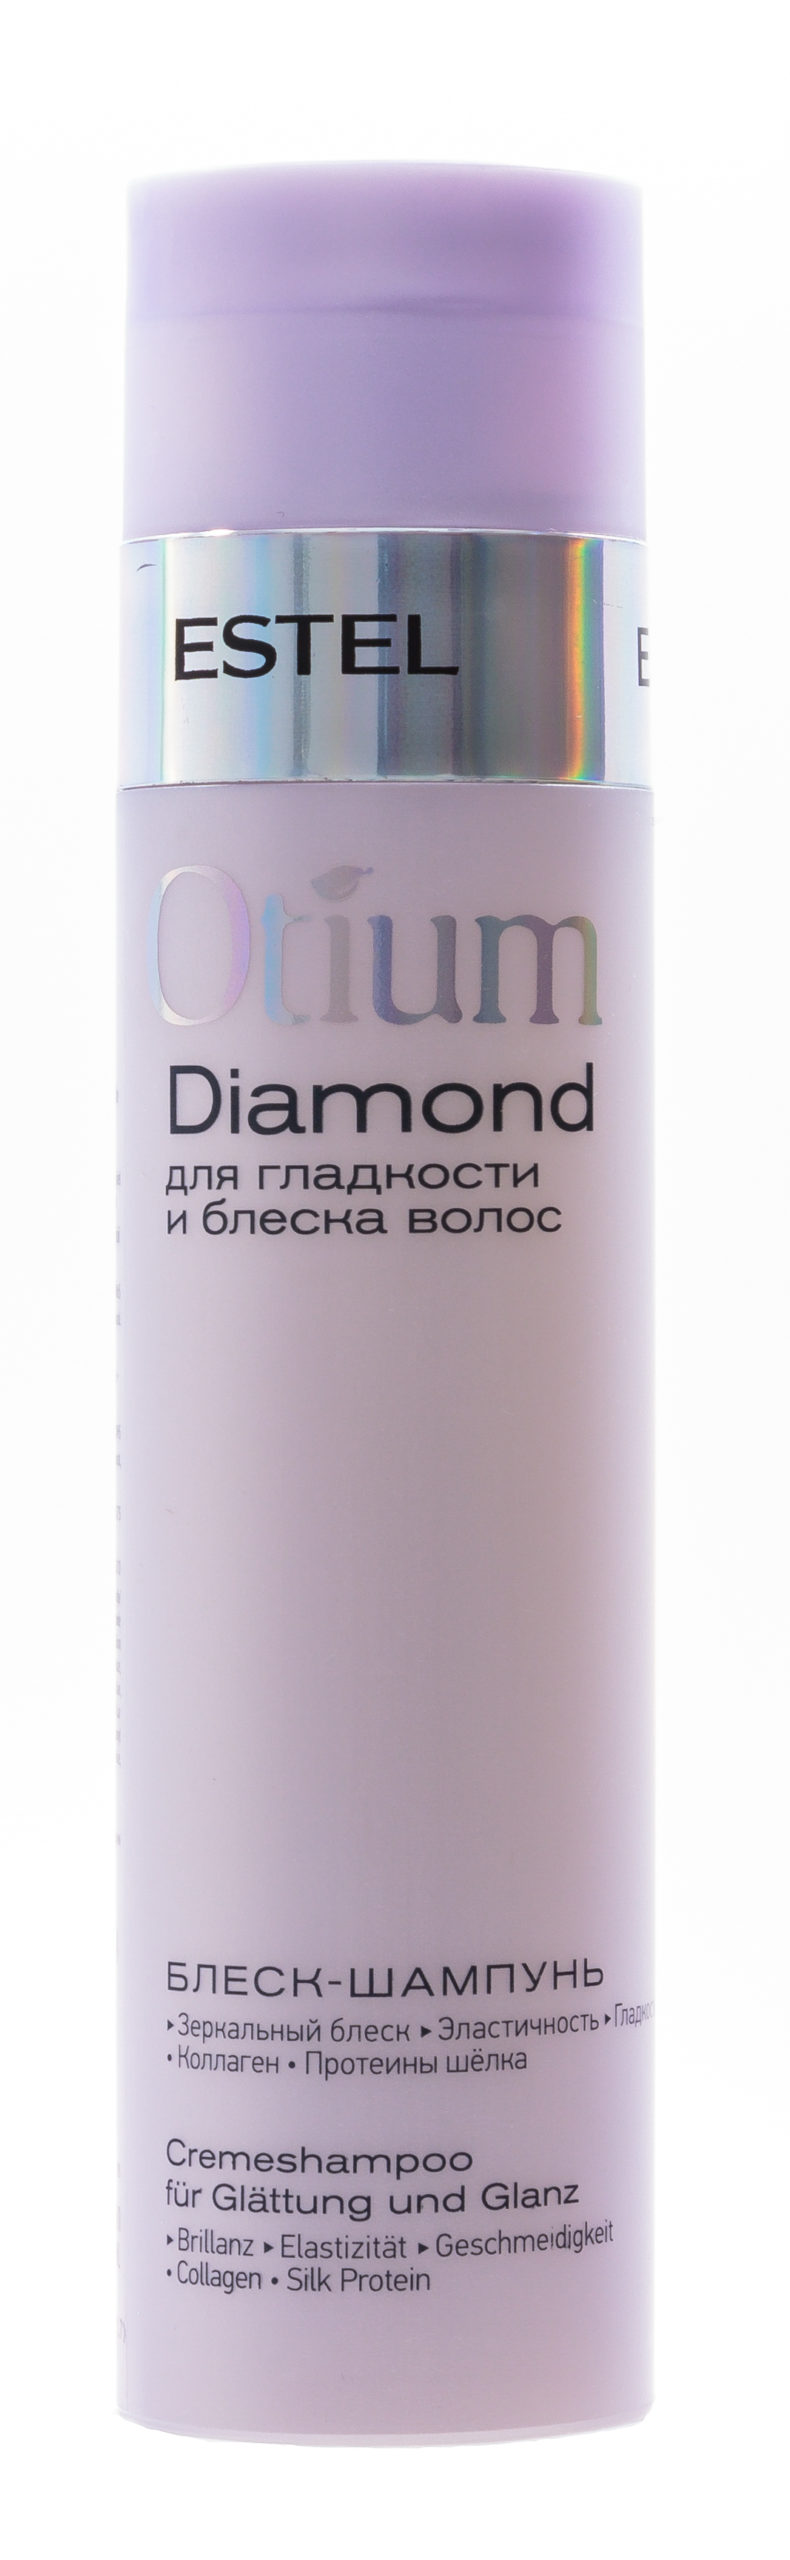 Шампунь-блеск для гладкости и блеска волос Diamond, 250 мл ESTEL